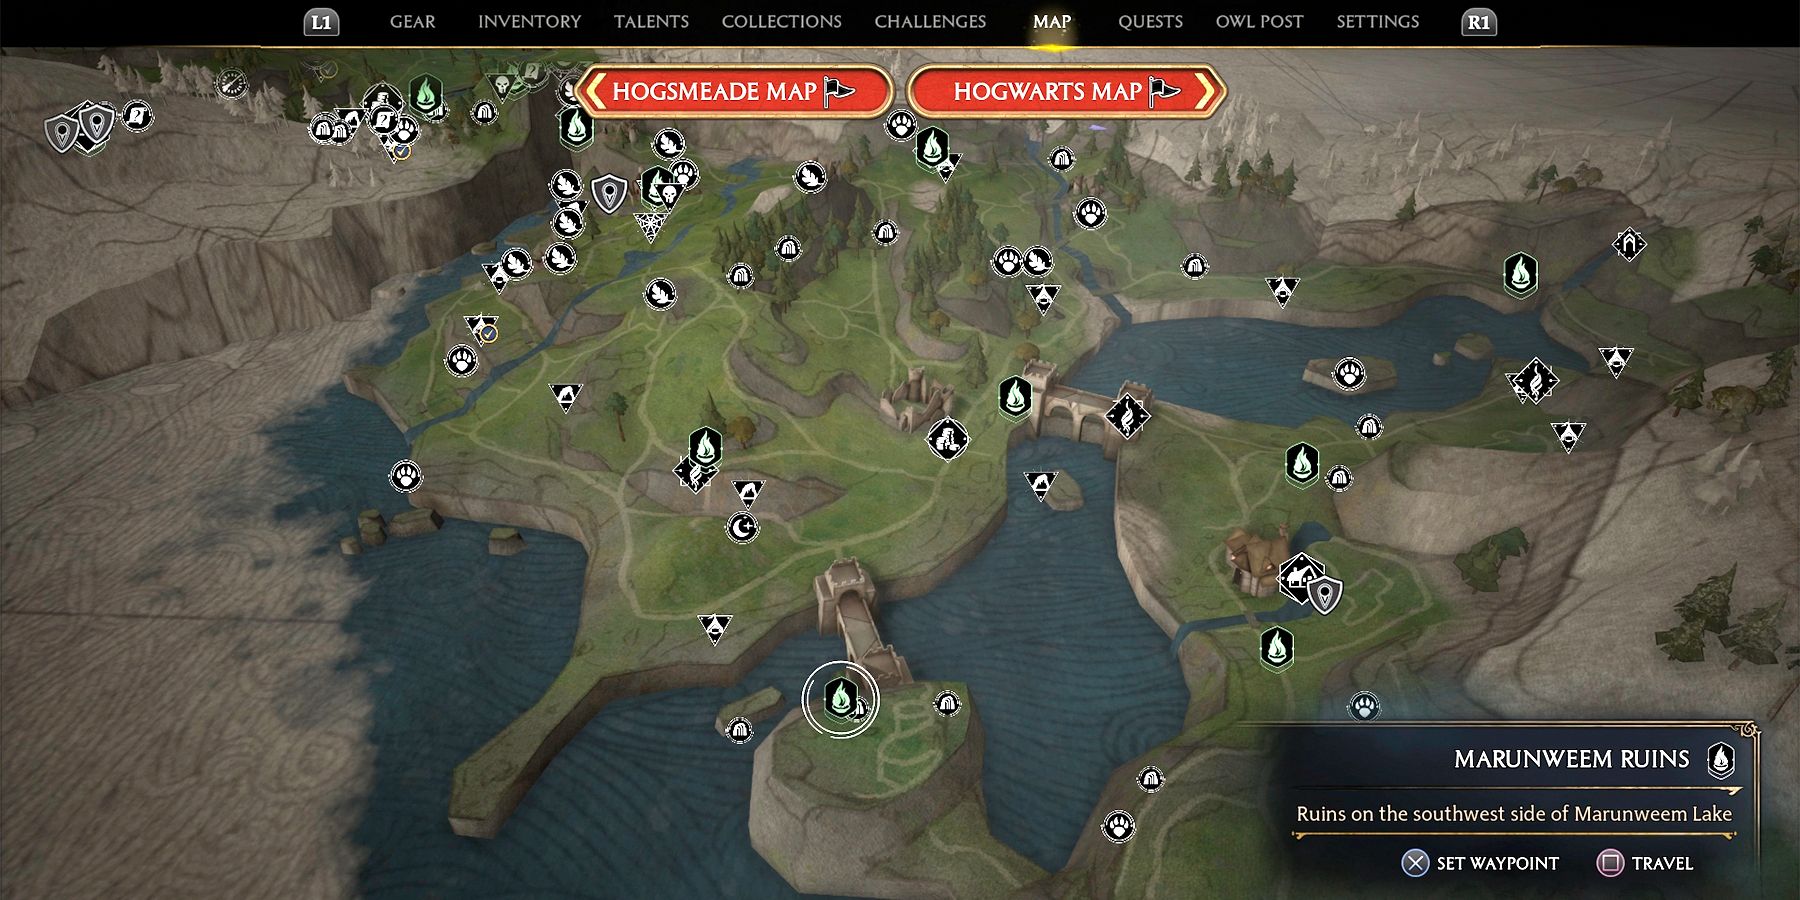 marunweem ruins treasure vaults locations in hogwarts legacy